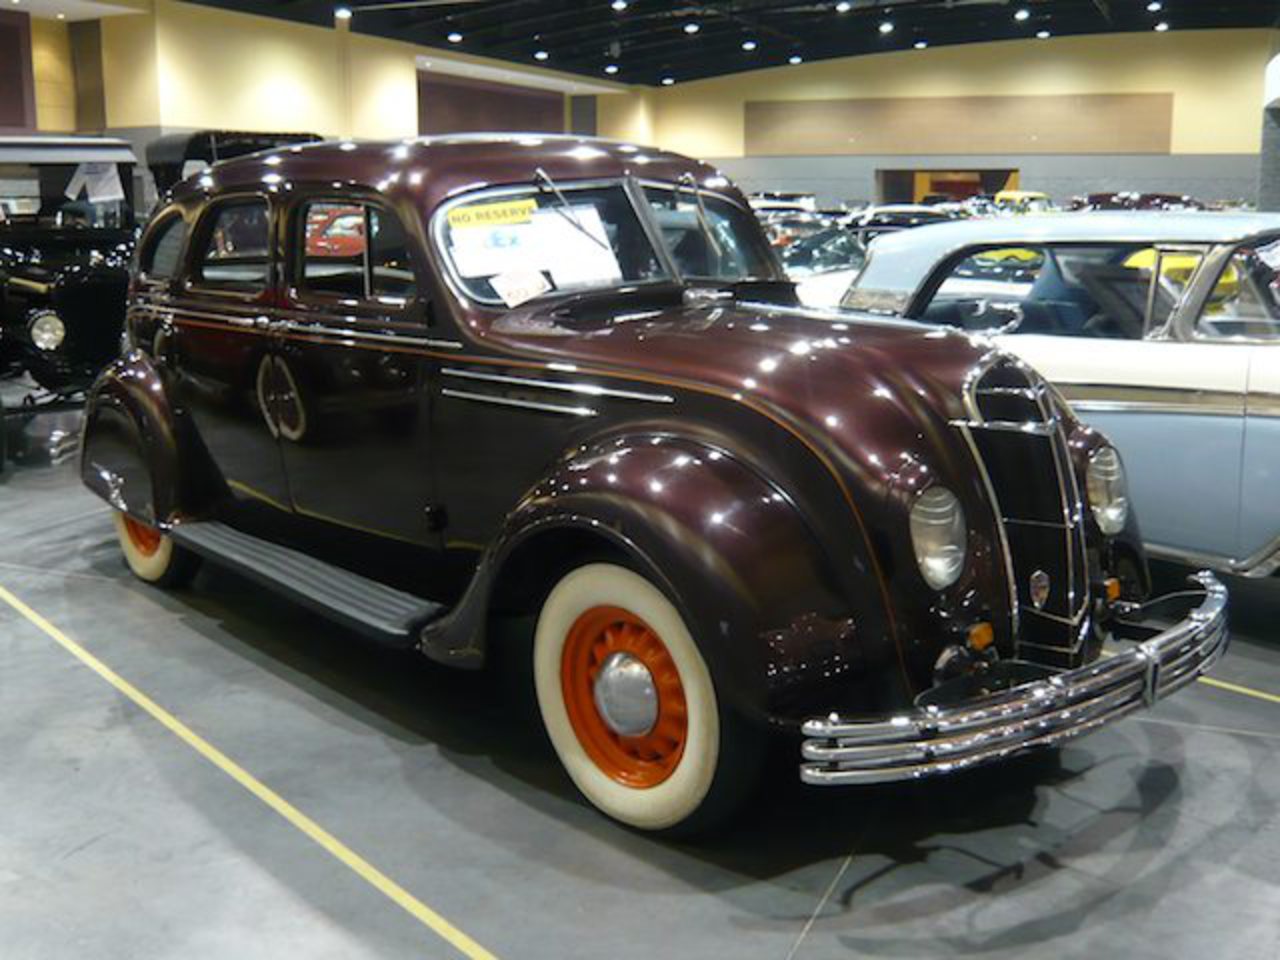 Packard Special 4 Dr Sedan - CarPatys.